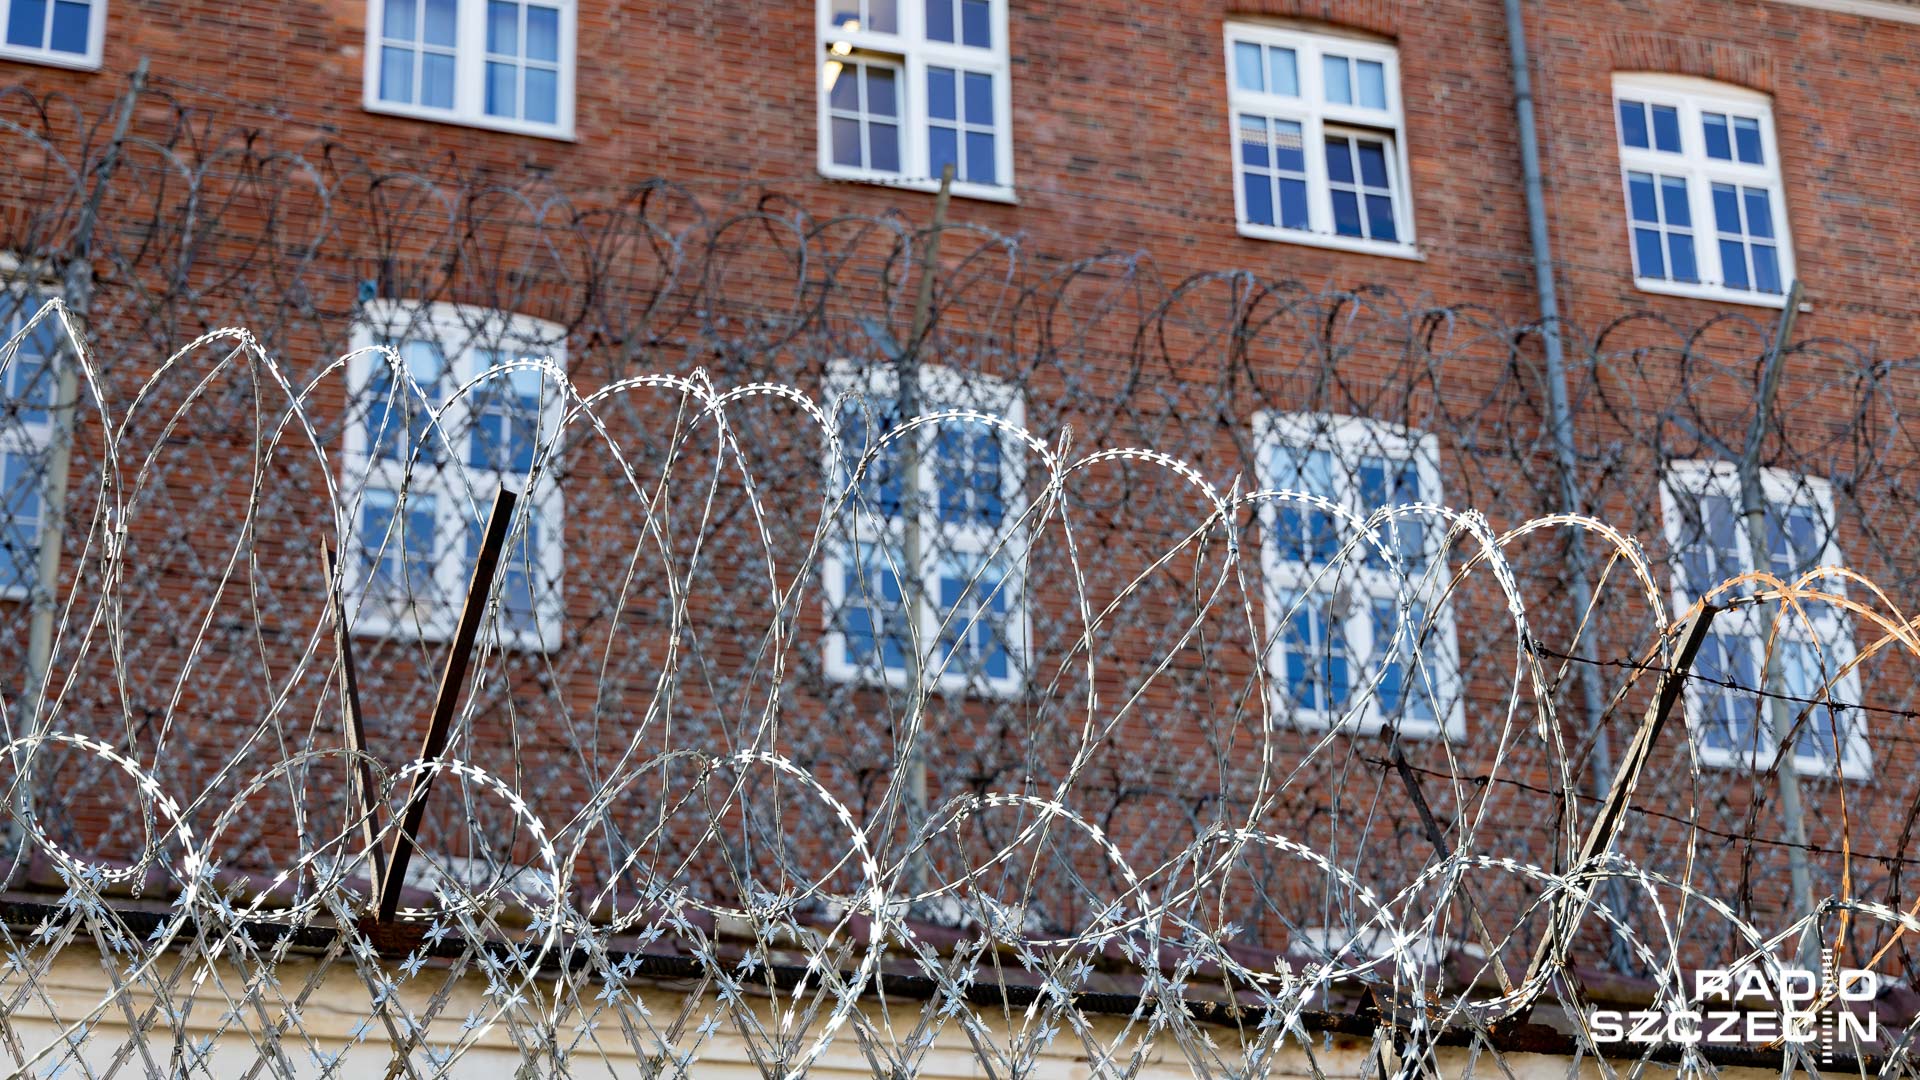 Sąd Okręgowy we Włocławku skazał na 25 lat pozbawienia wolności sprawcę ataku na szkołę numer 1 w Brześciu Kujawskim. Do zdarzenia doszło 27 maja 2019.